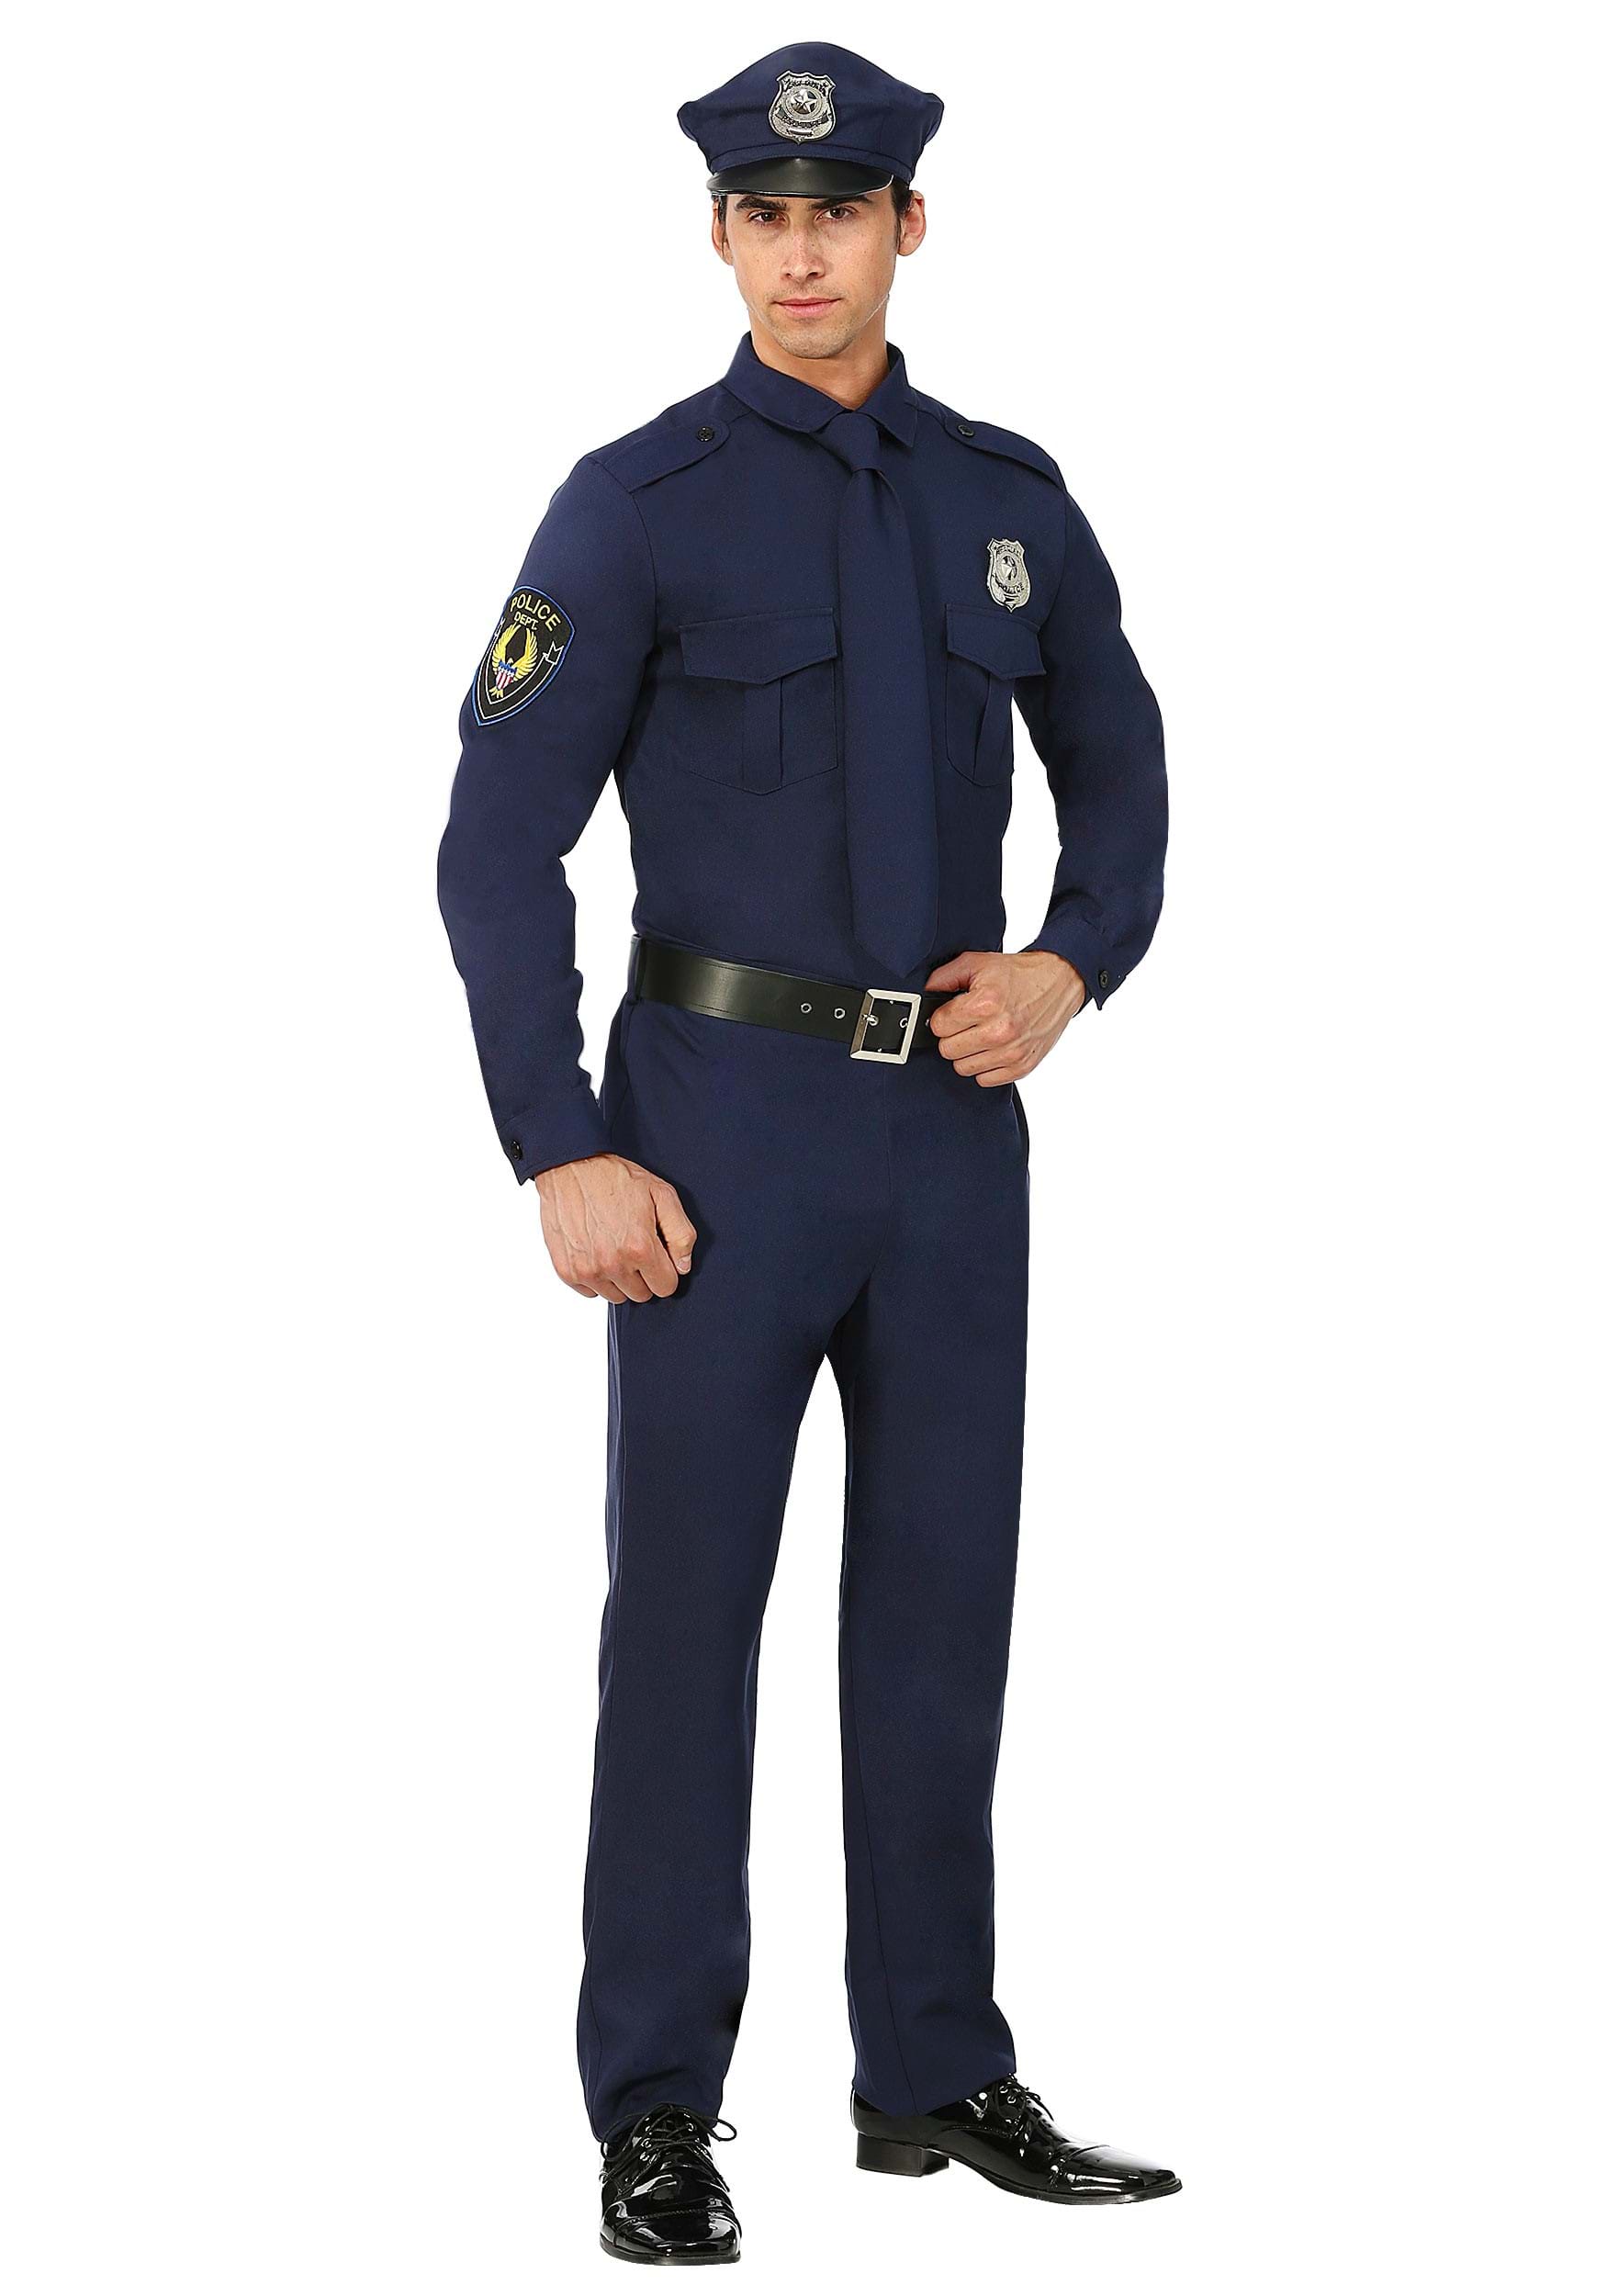 Photos - Fancy Dress Fancy FUN Costumes Men's Cop  Dress Costume |Men's Law Enforcement  Dr 